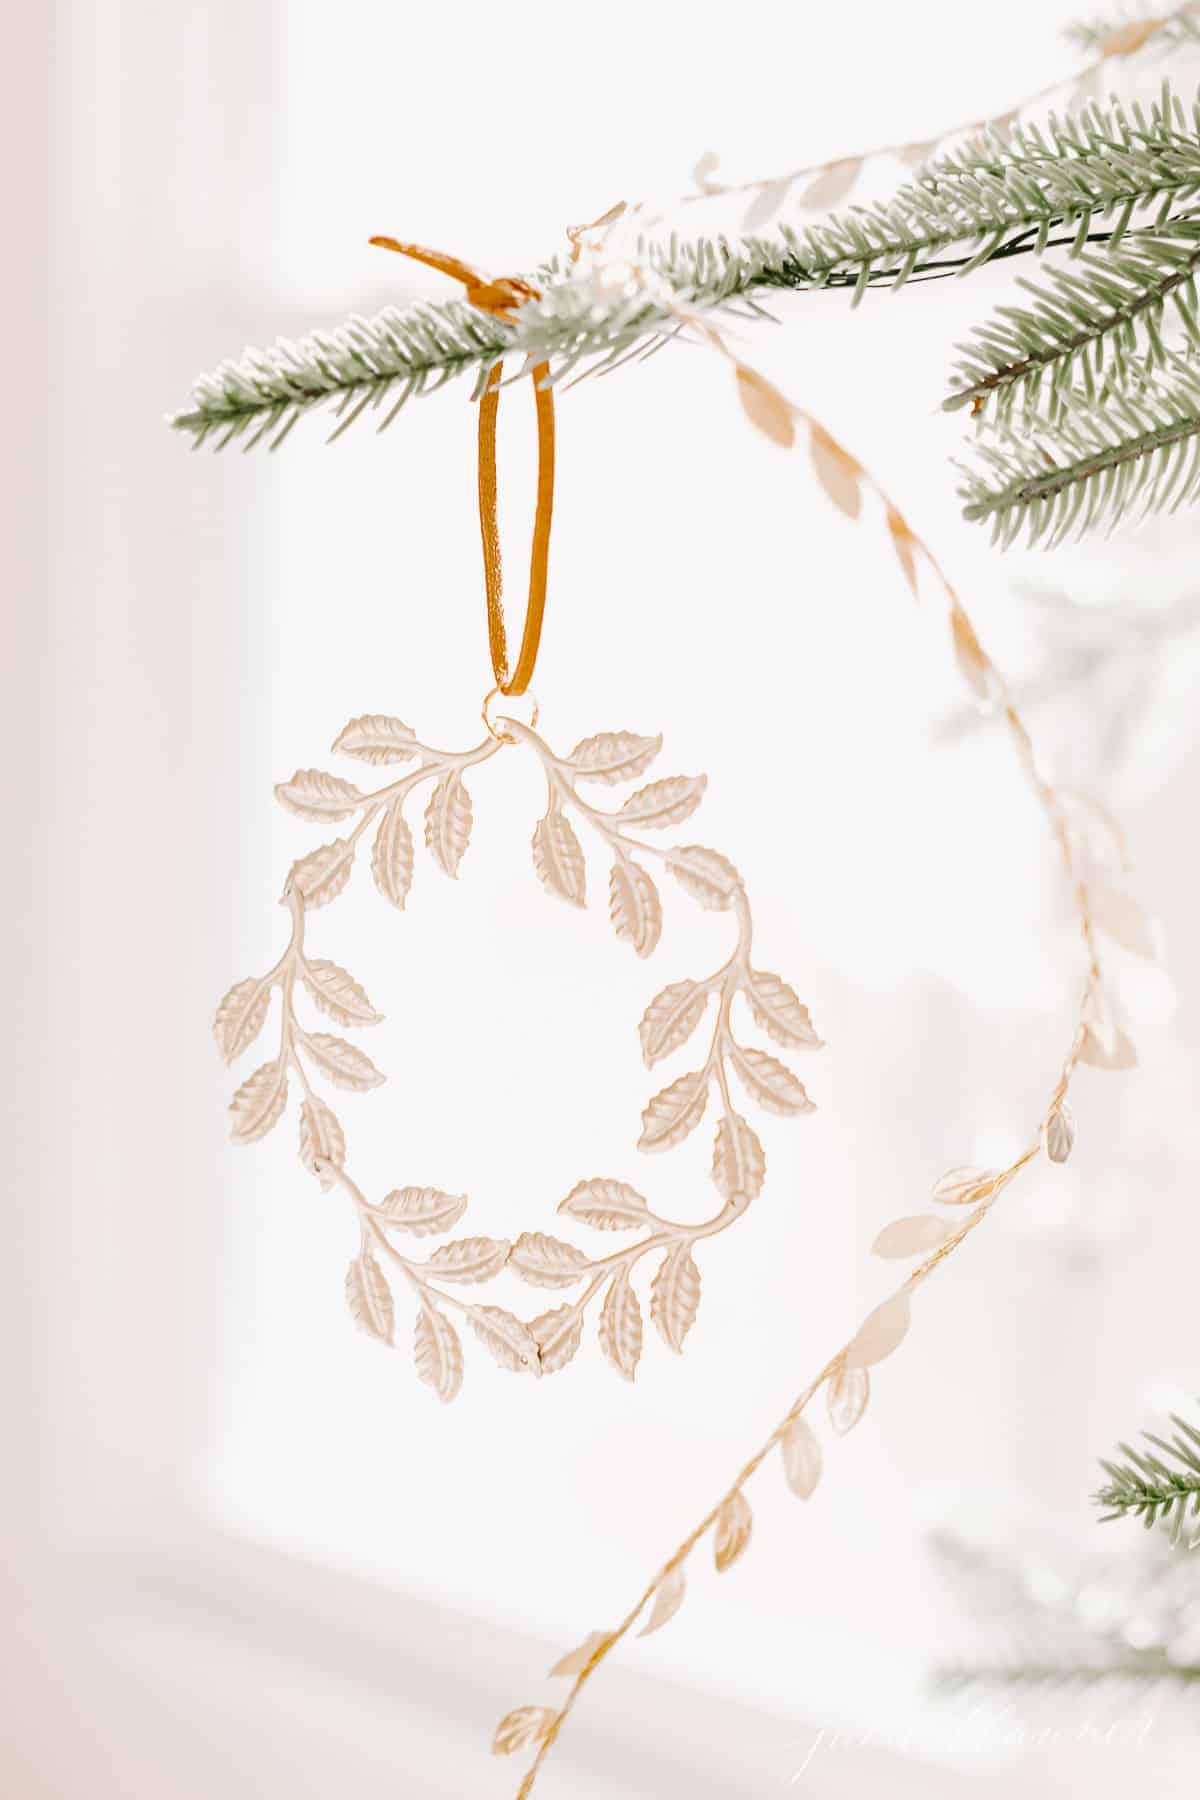 Scandinavian Christmas Decorations | Julie Blanner